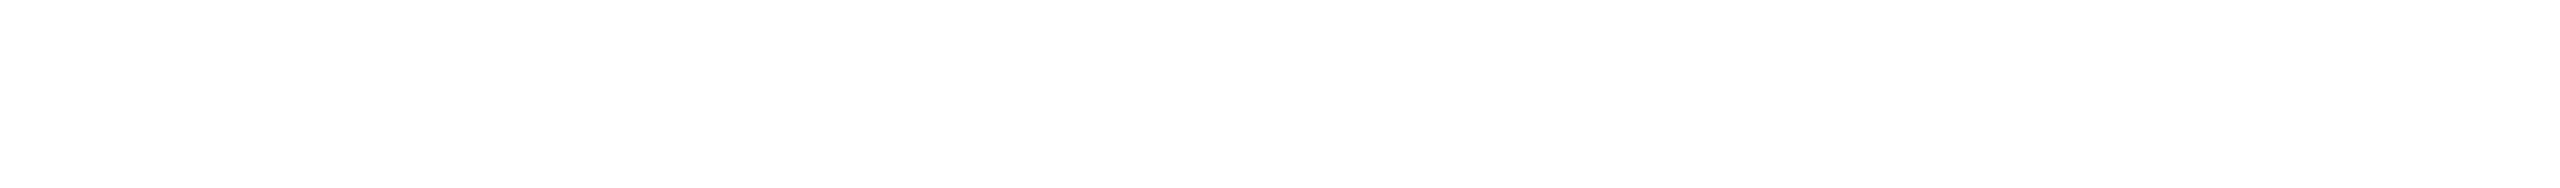 Anchor Property - Logo